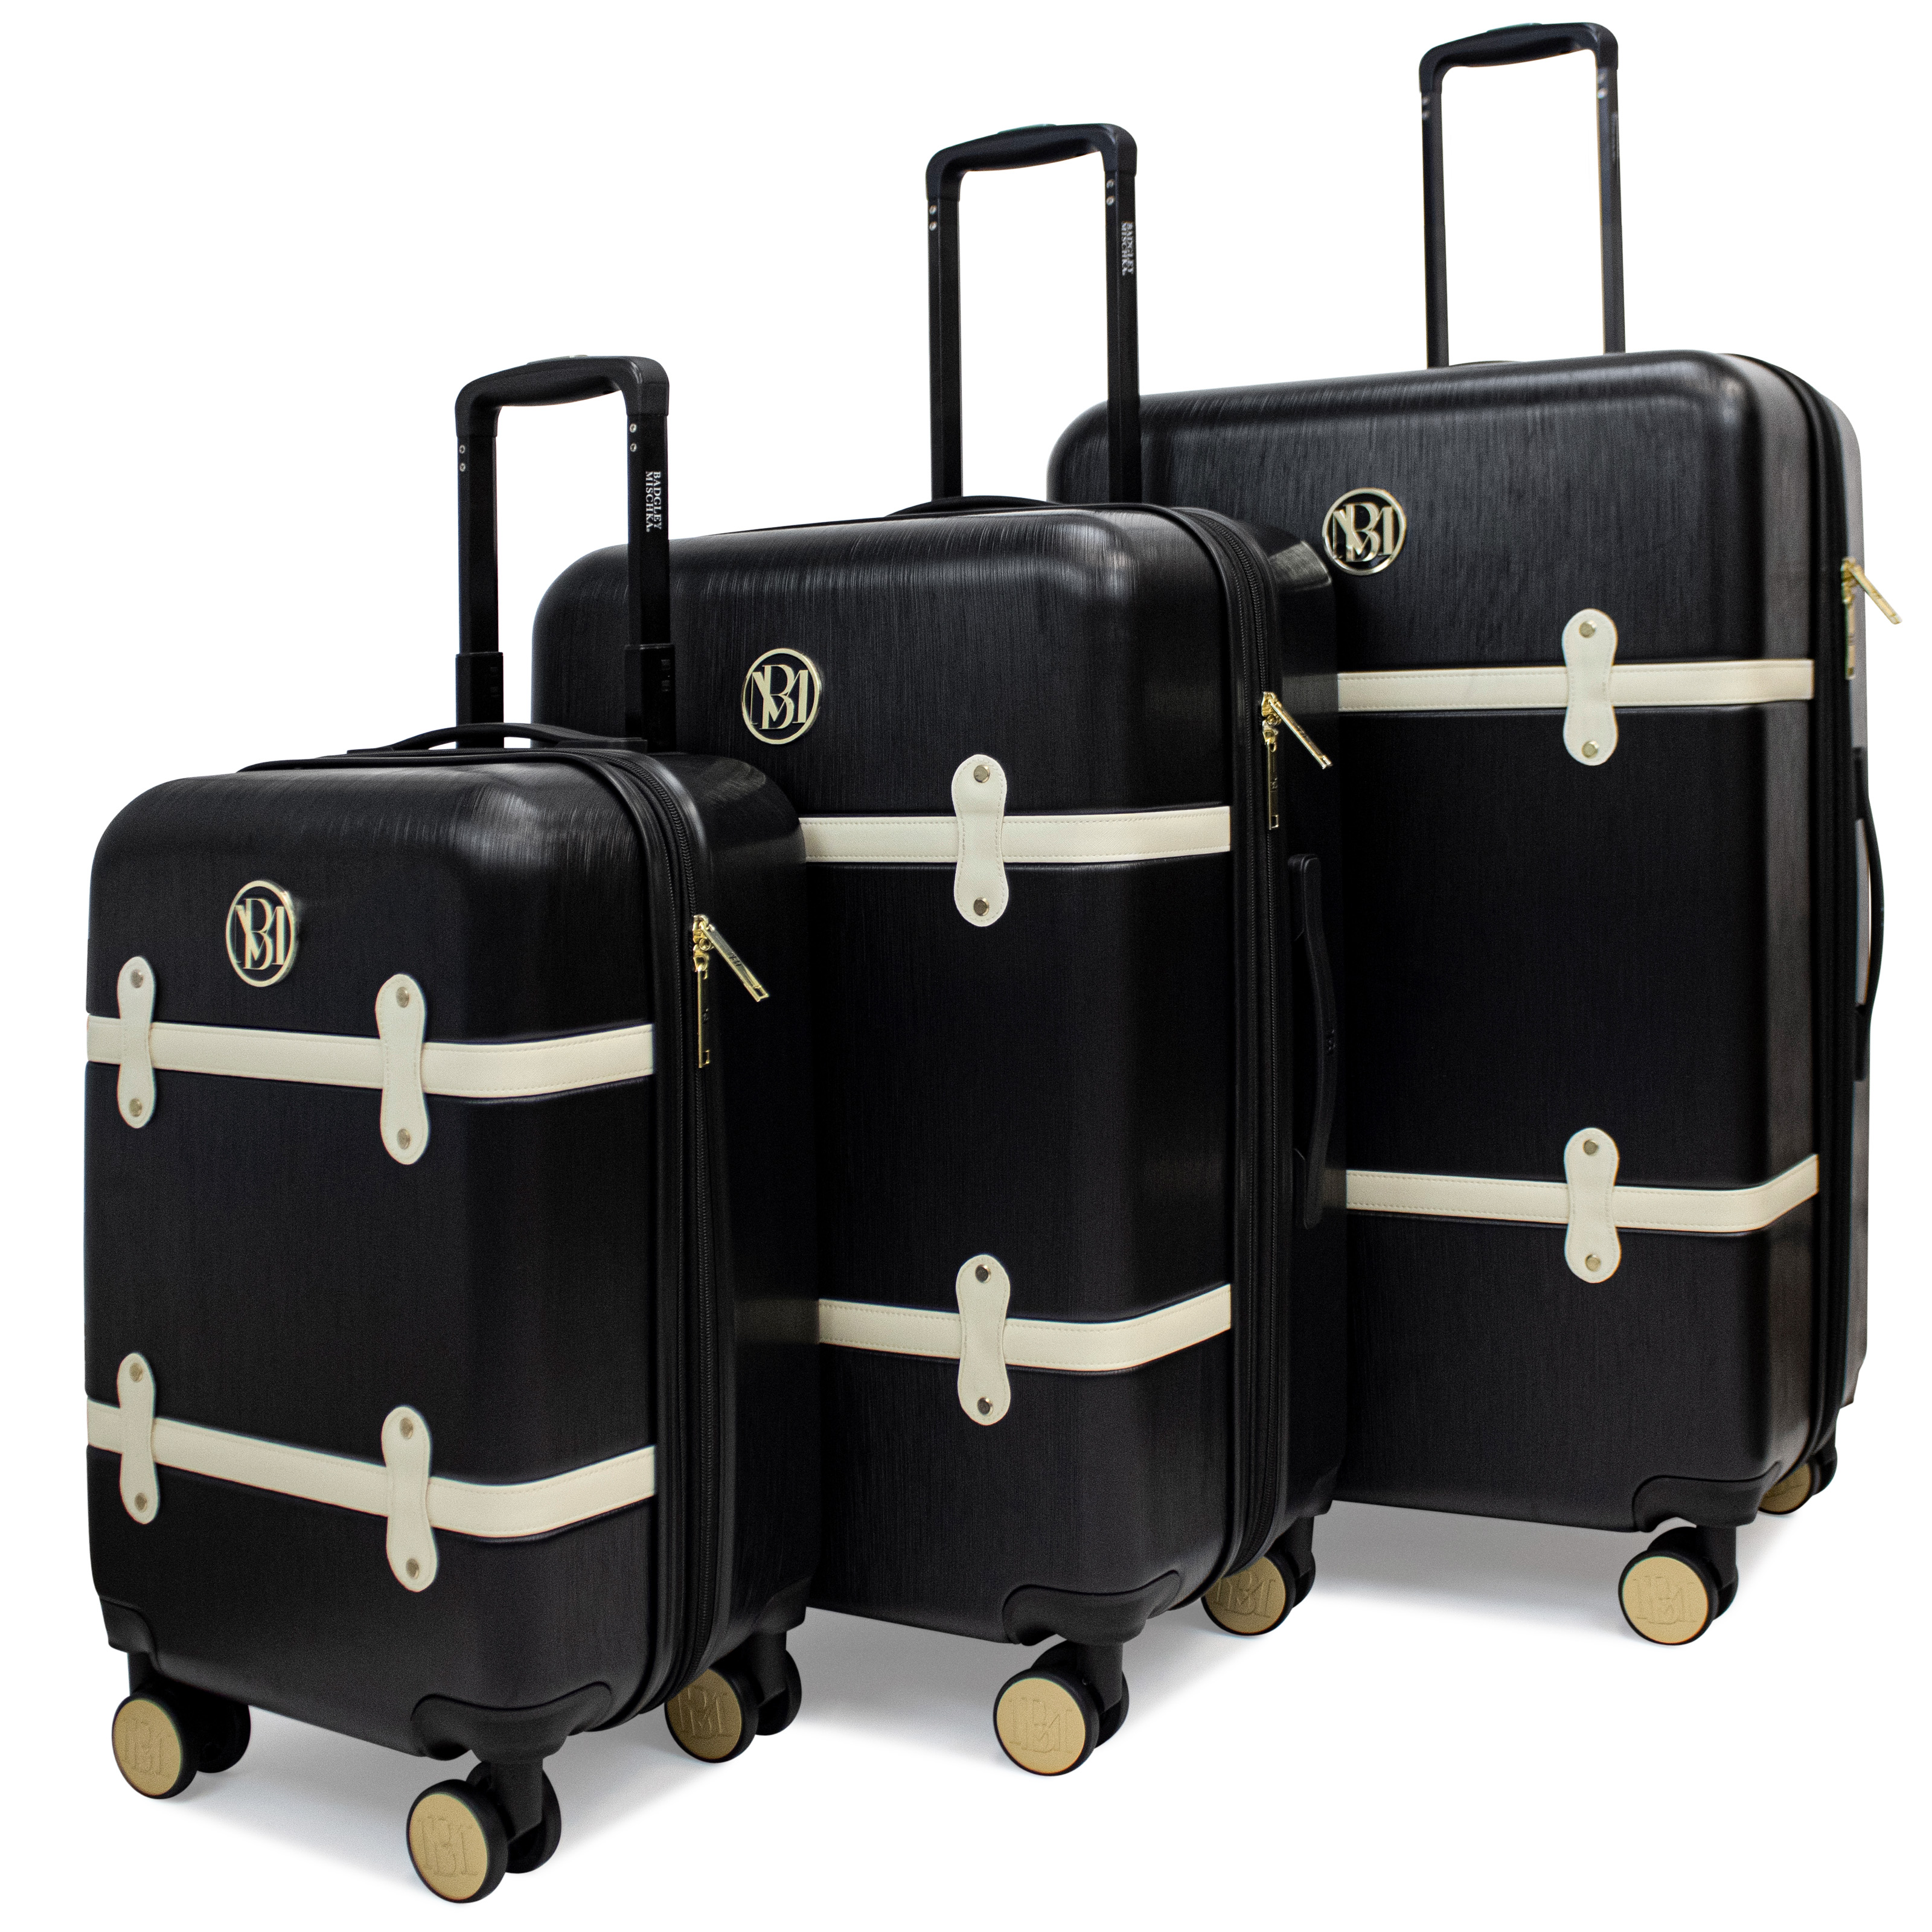 BADGLEY MISCHKA Grace 3 Piece Expandable Retro Luggage Set (Black) - image 1 of 3